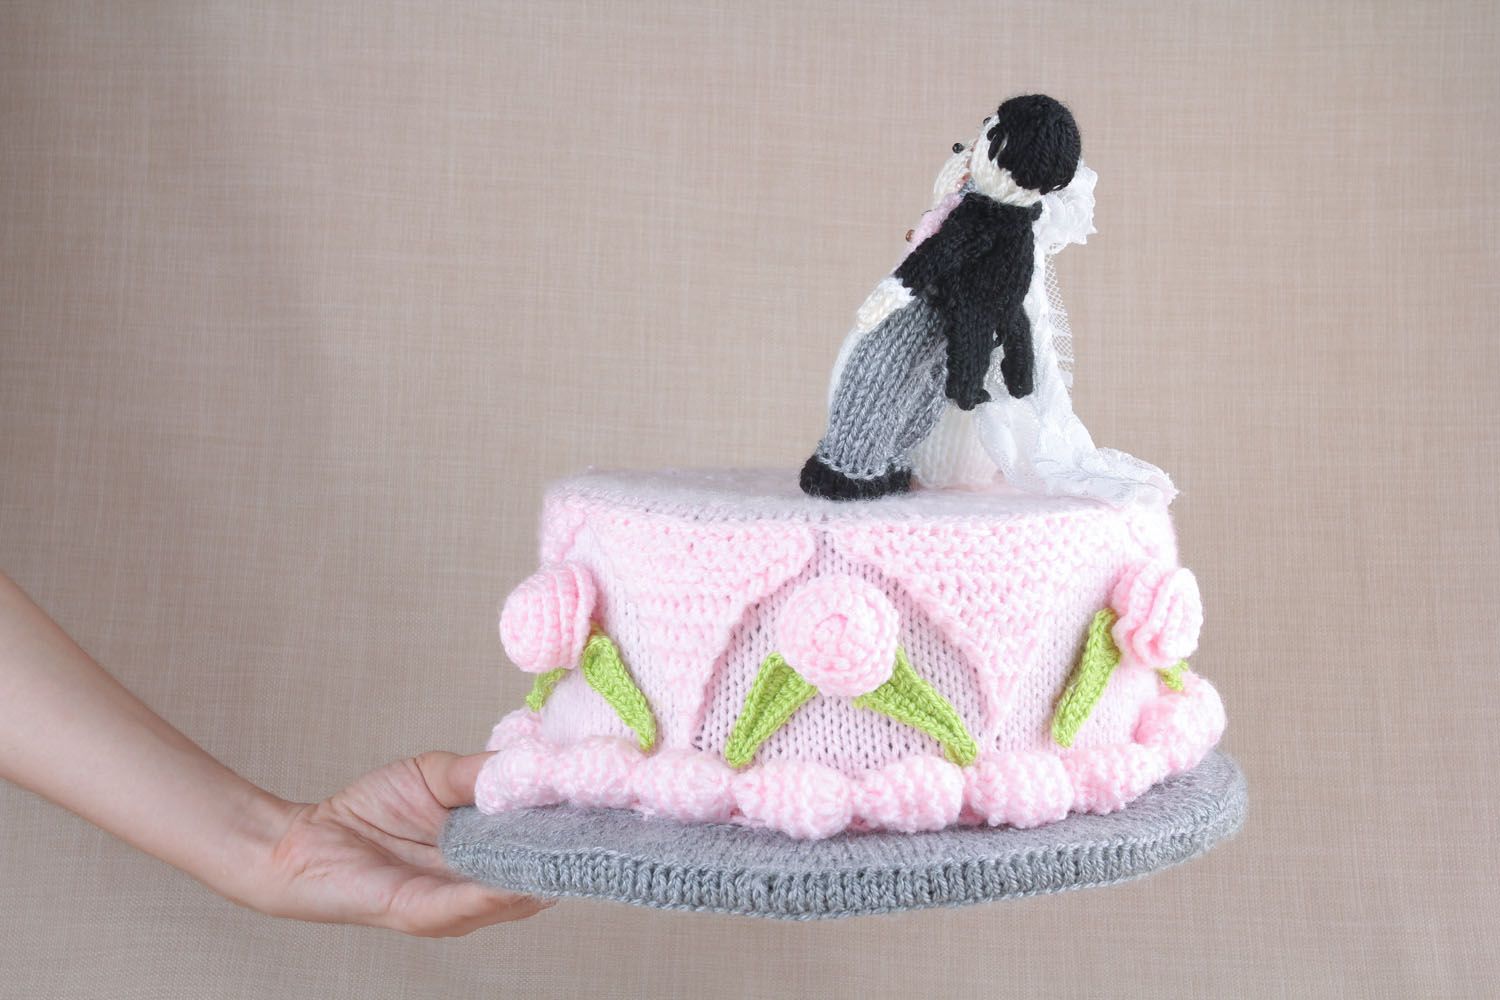 Décoration jouet tricoté gâteau de mariage photo 5